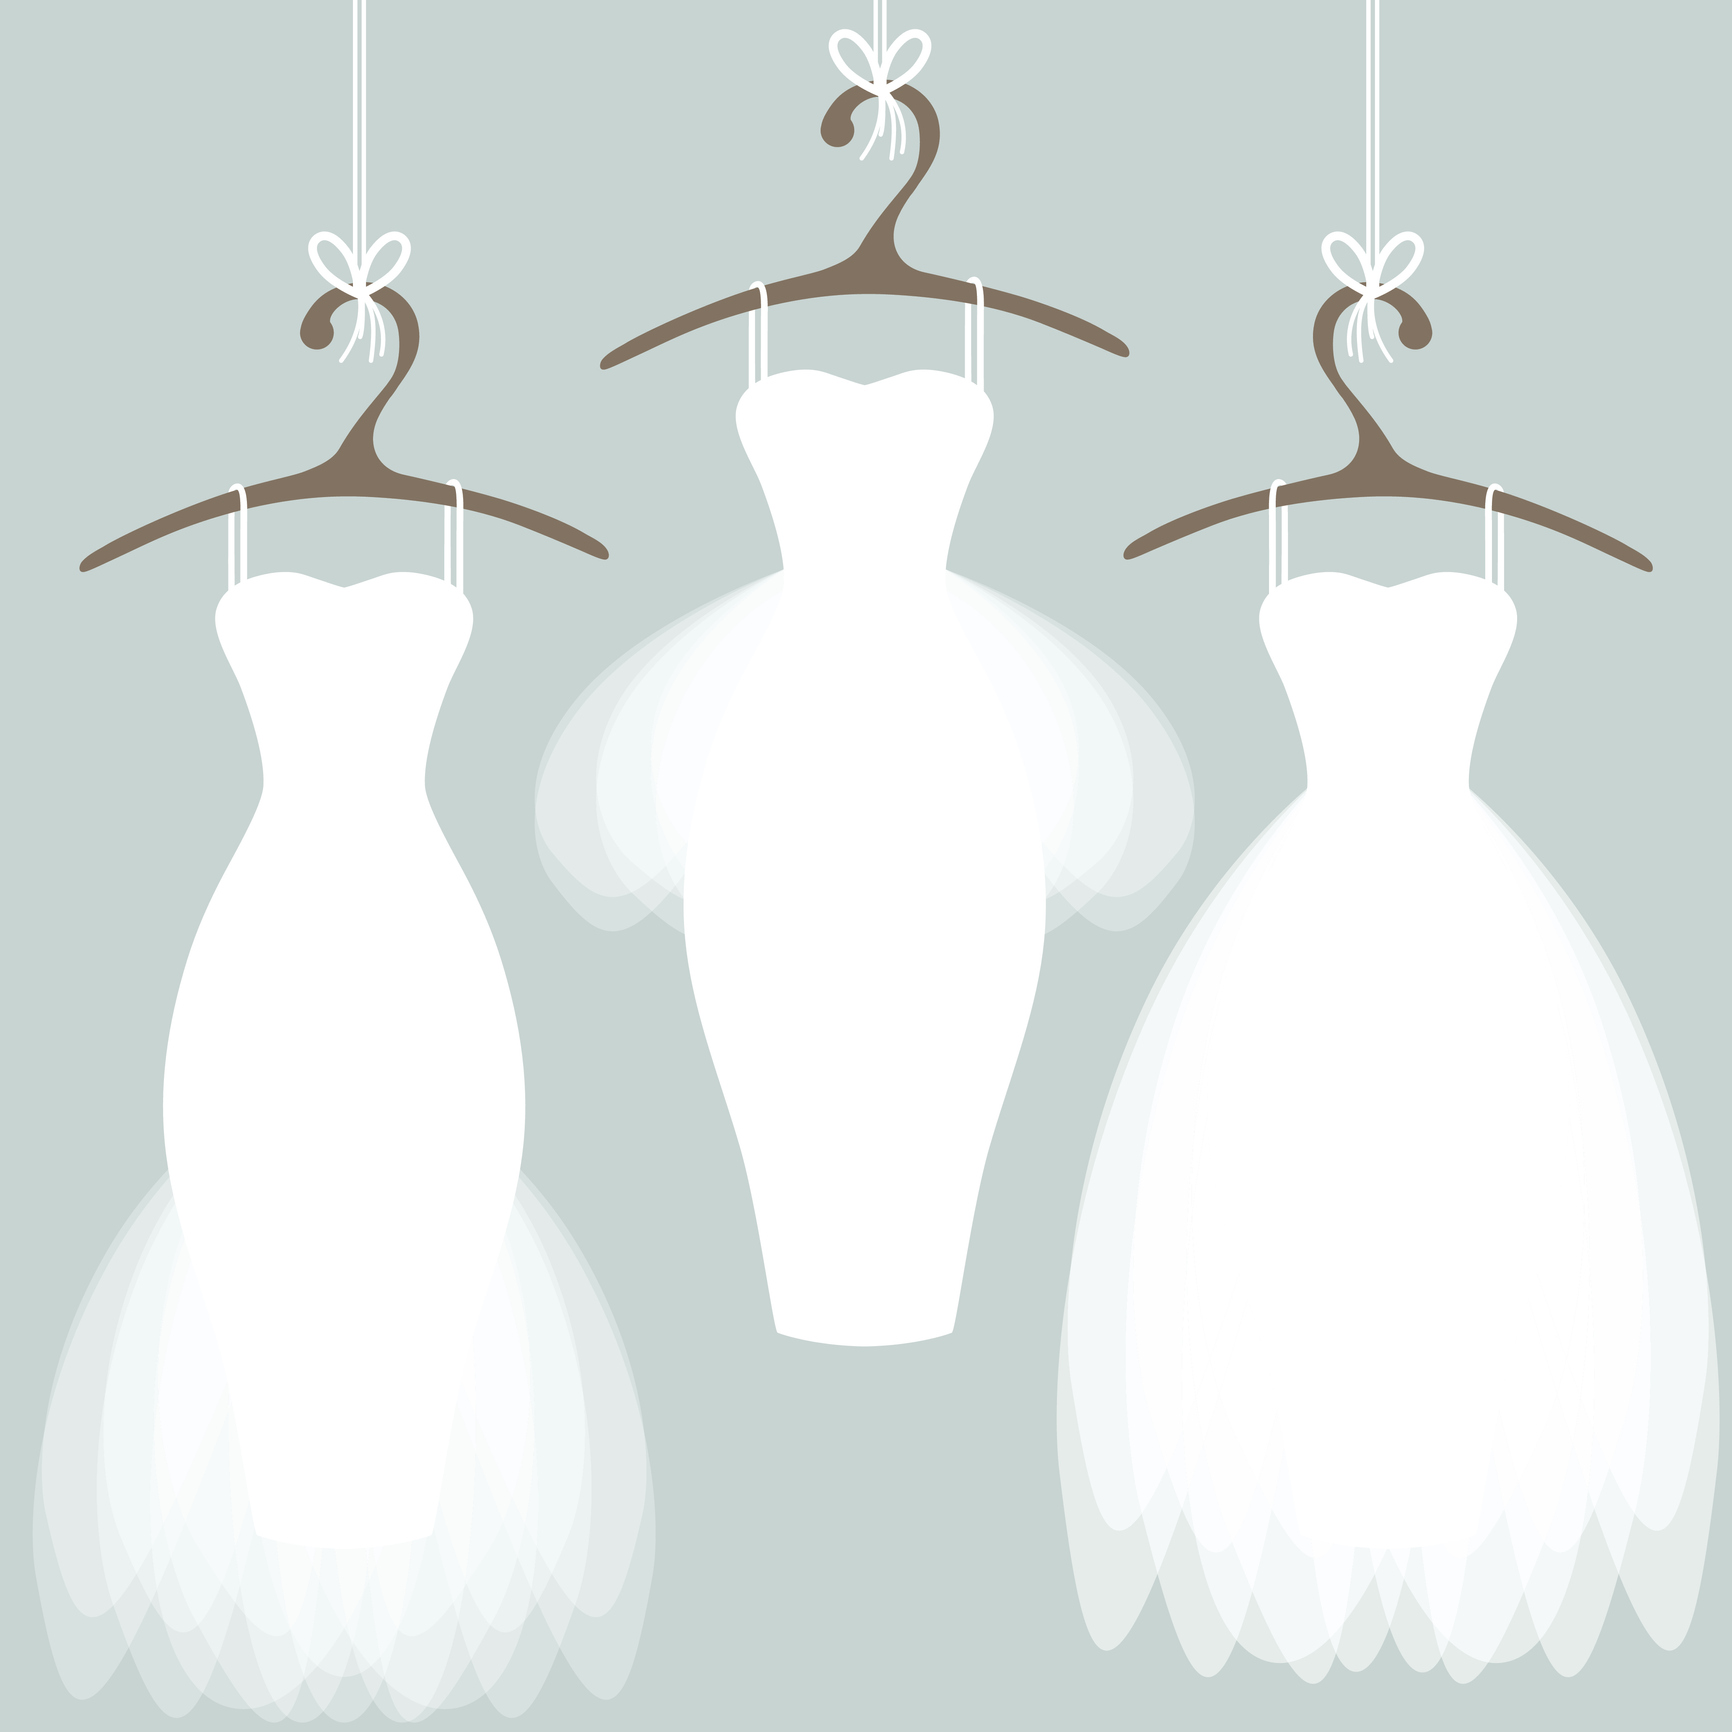 buy wedding gown online